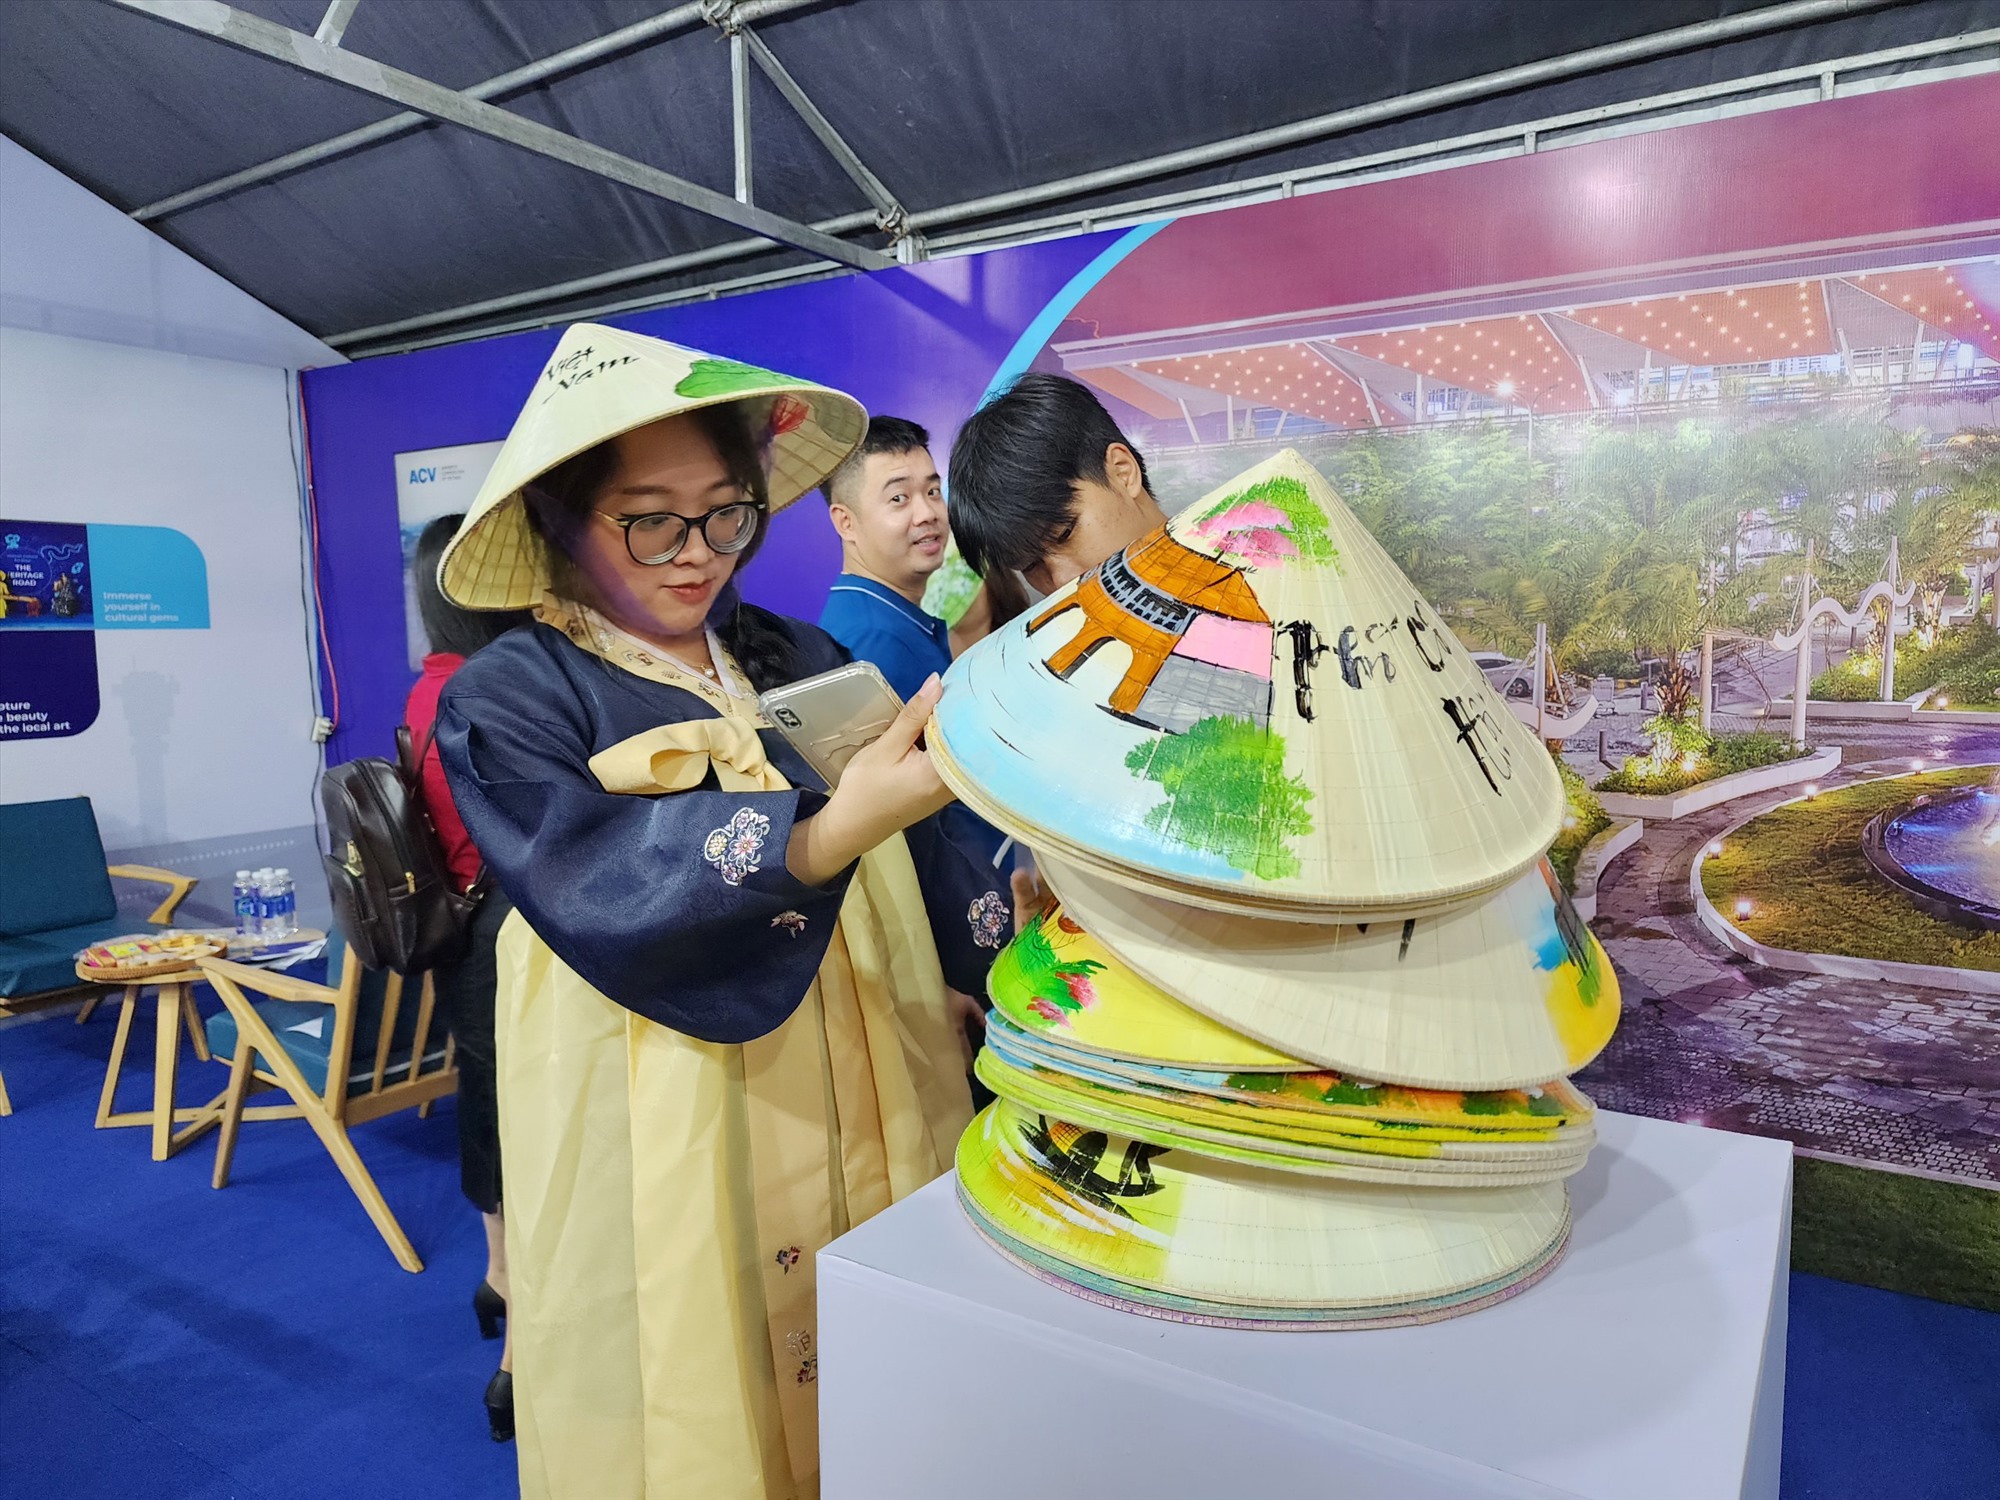 Nón lá Việt Nam cũng góp phần sắc màu cho lễ hội. Ảnh: Thùy Trang